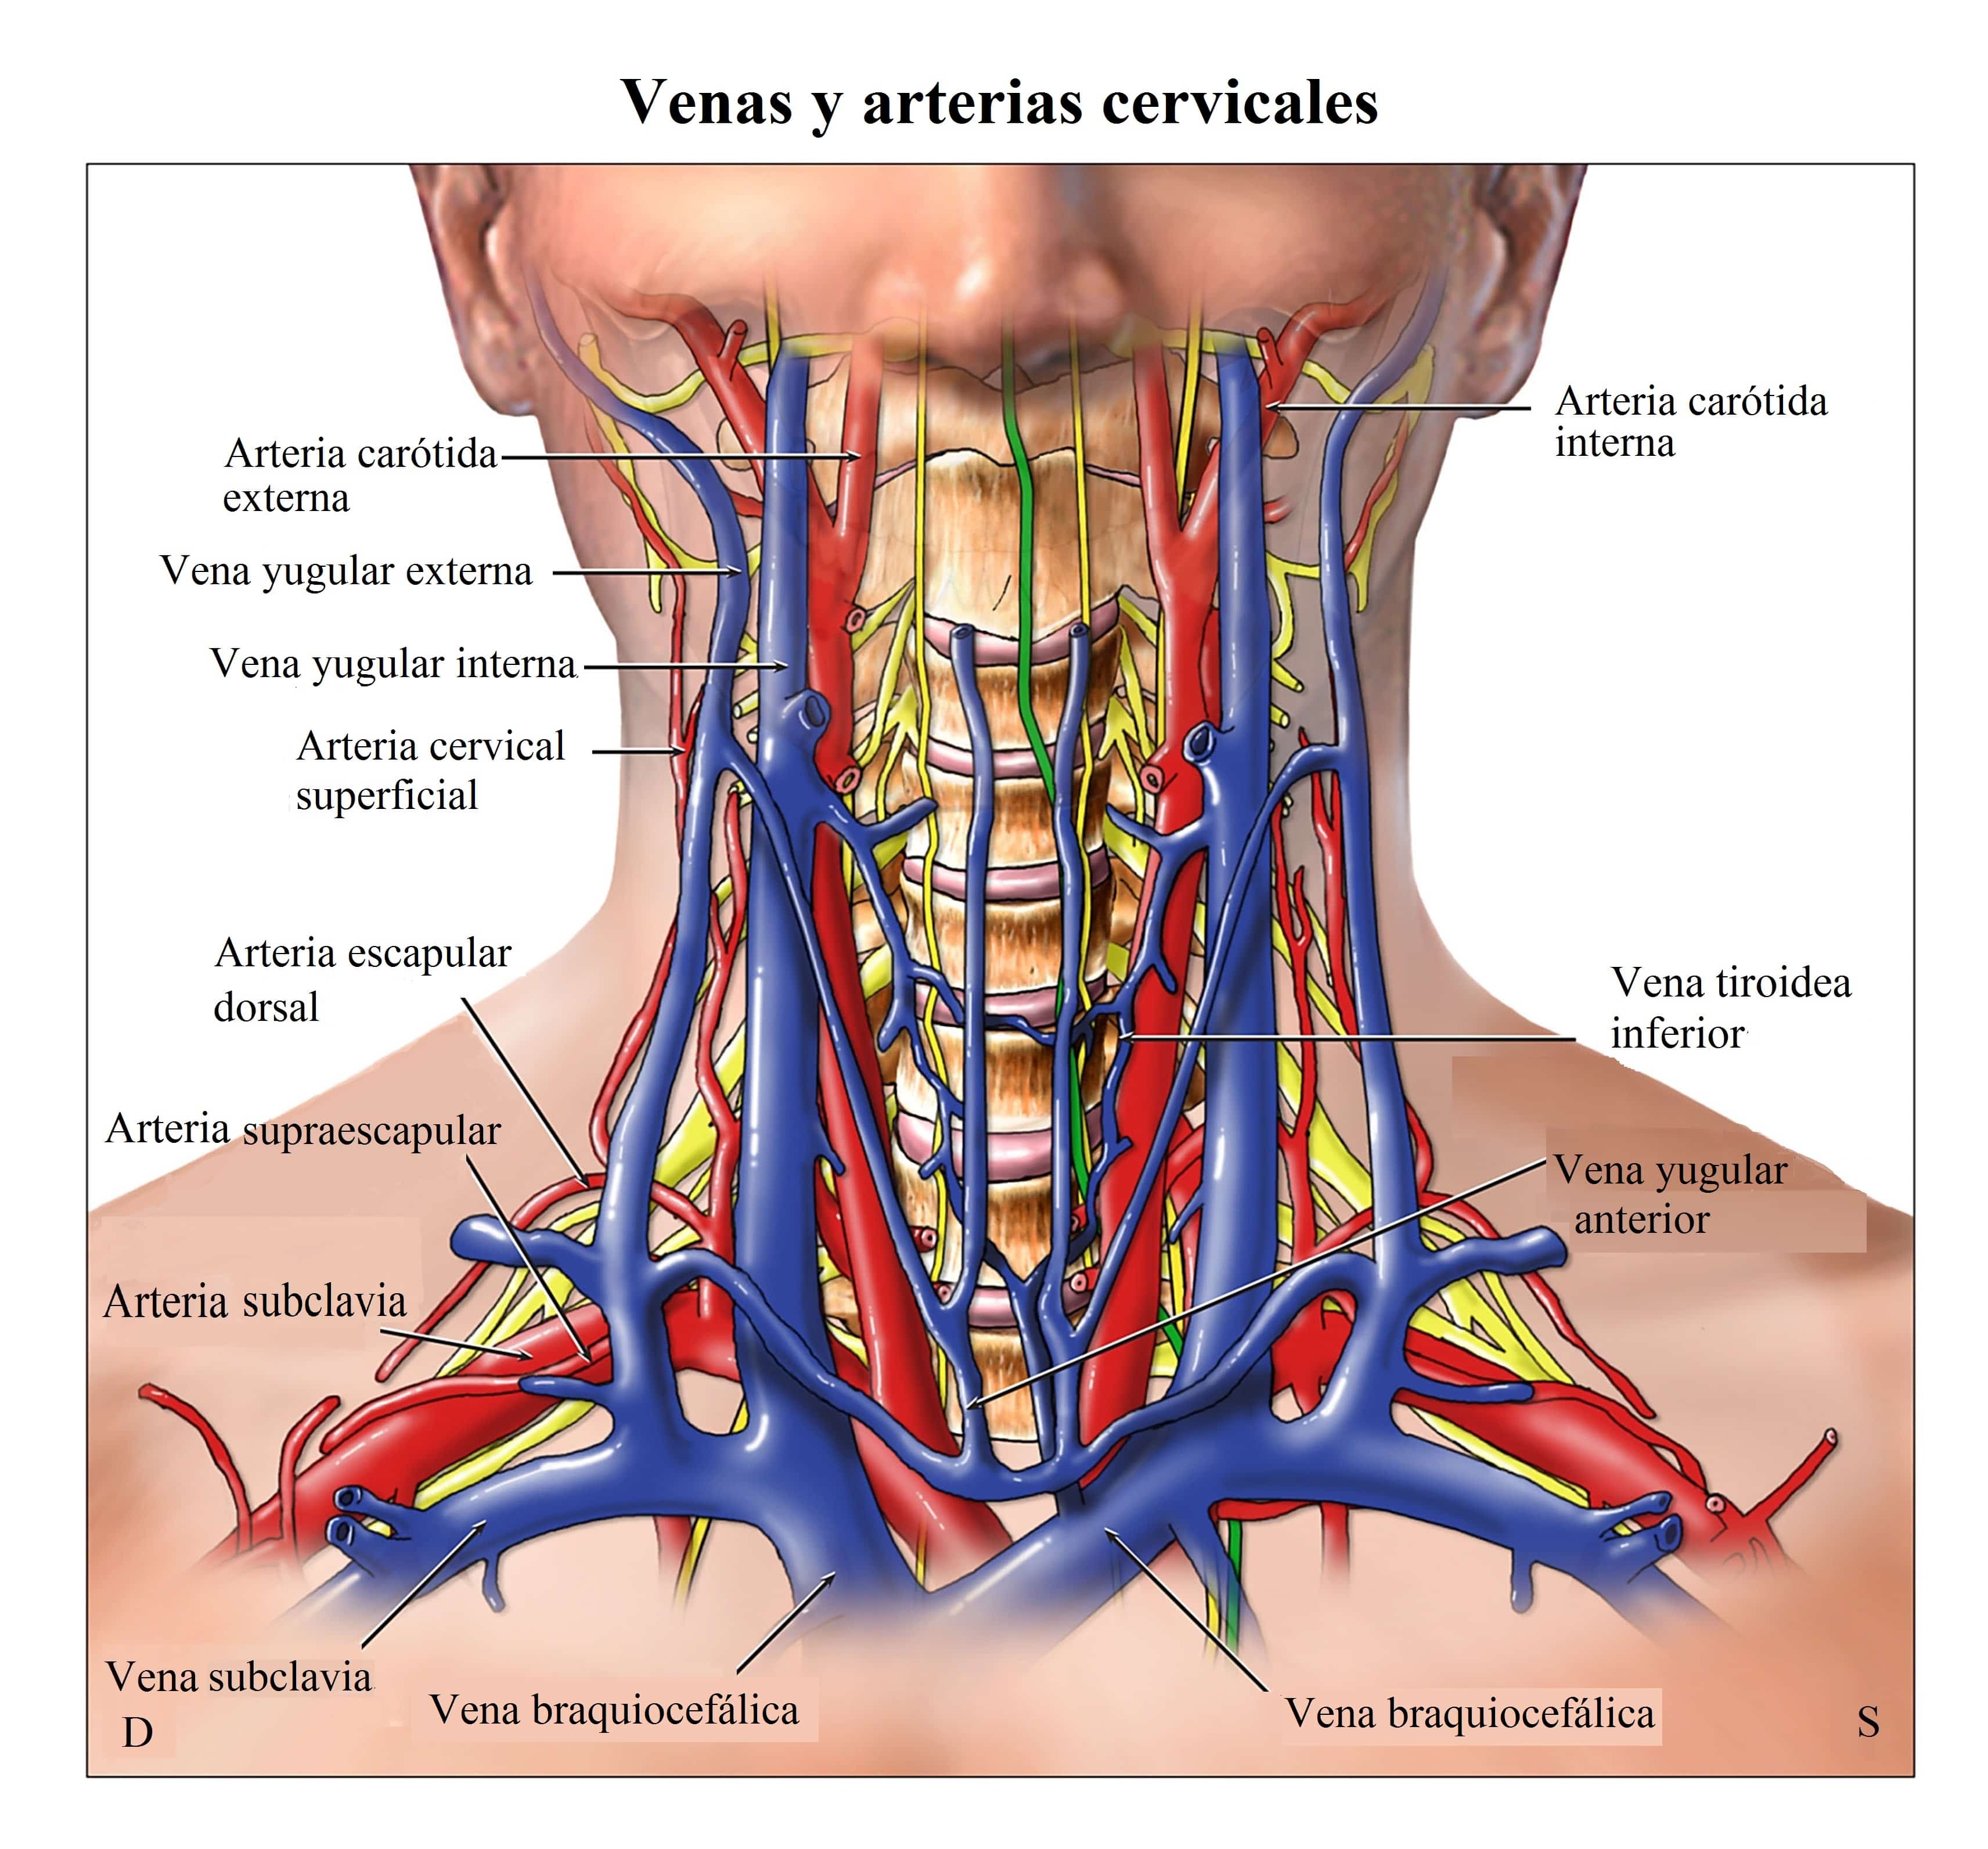 Arterias-coronarias-carotidas-vertebrales